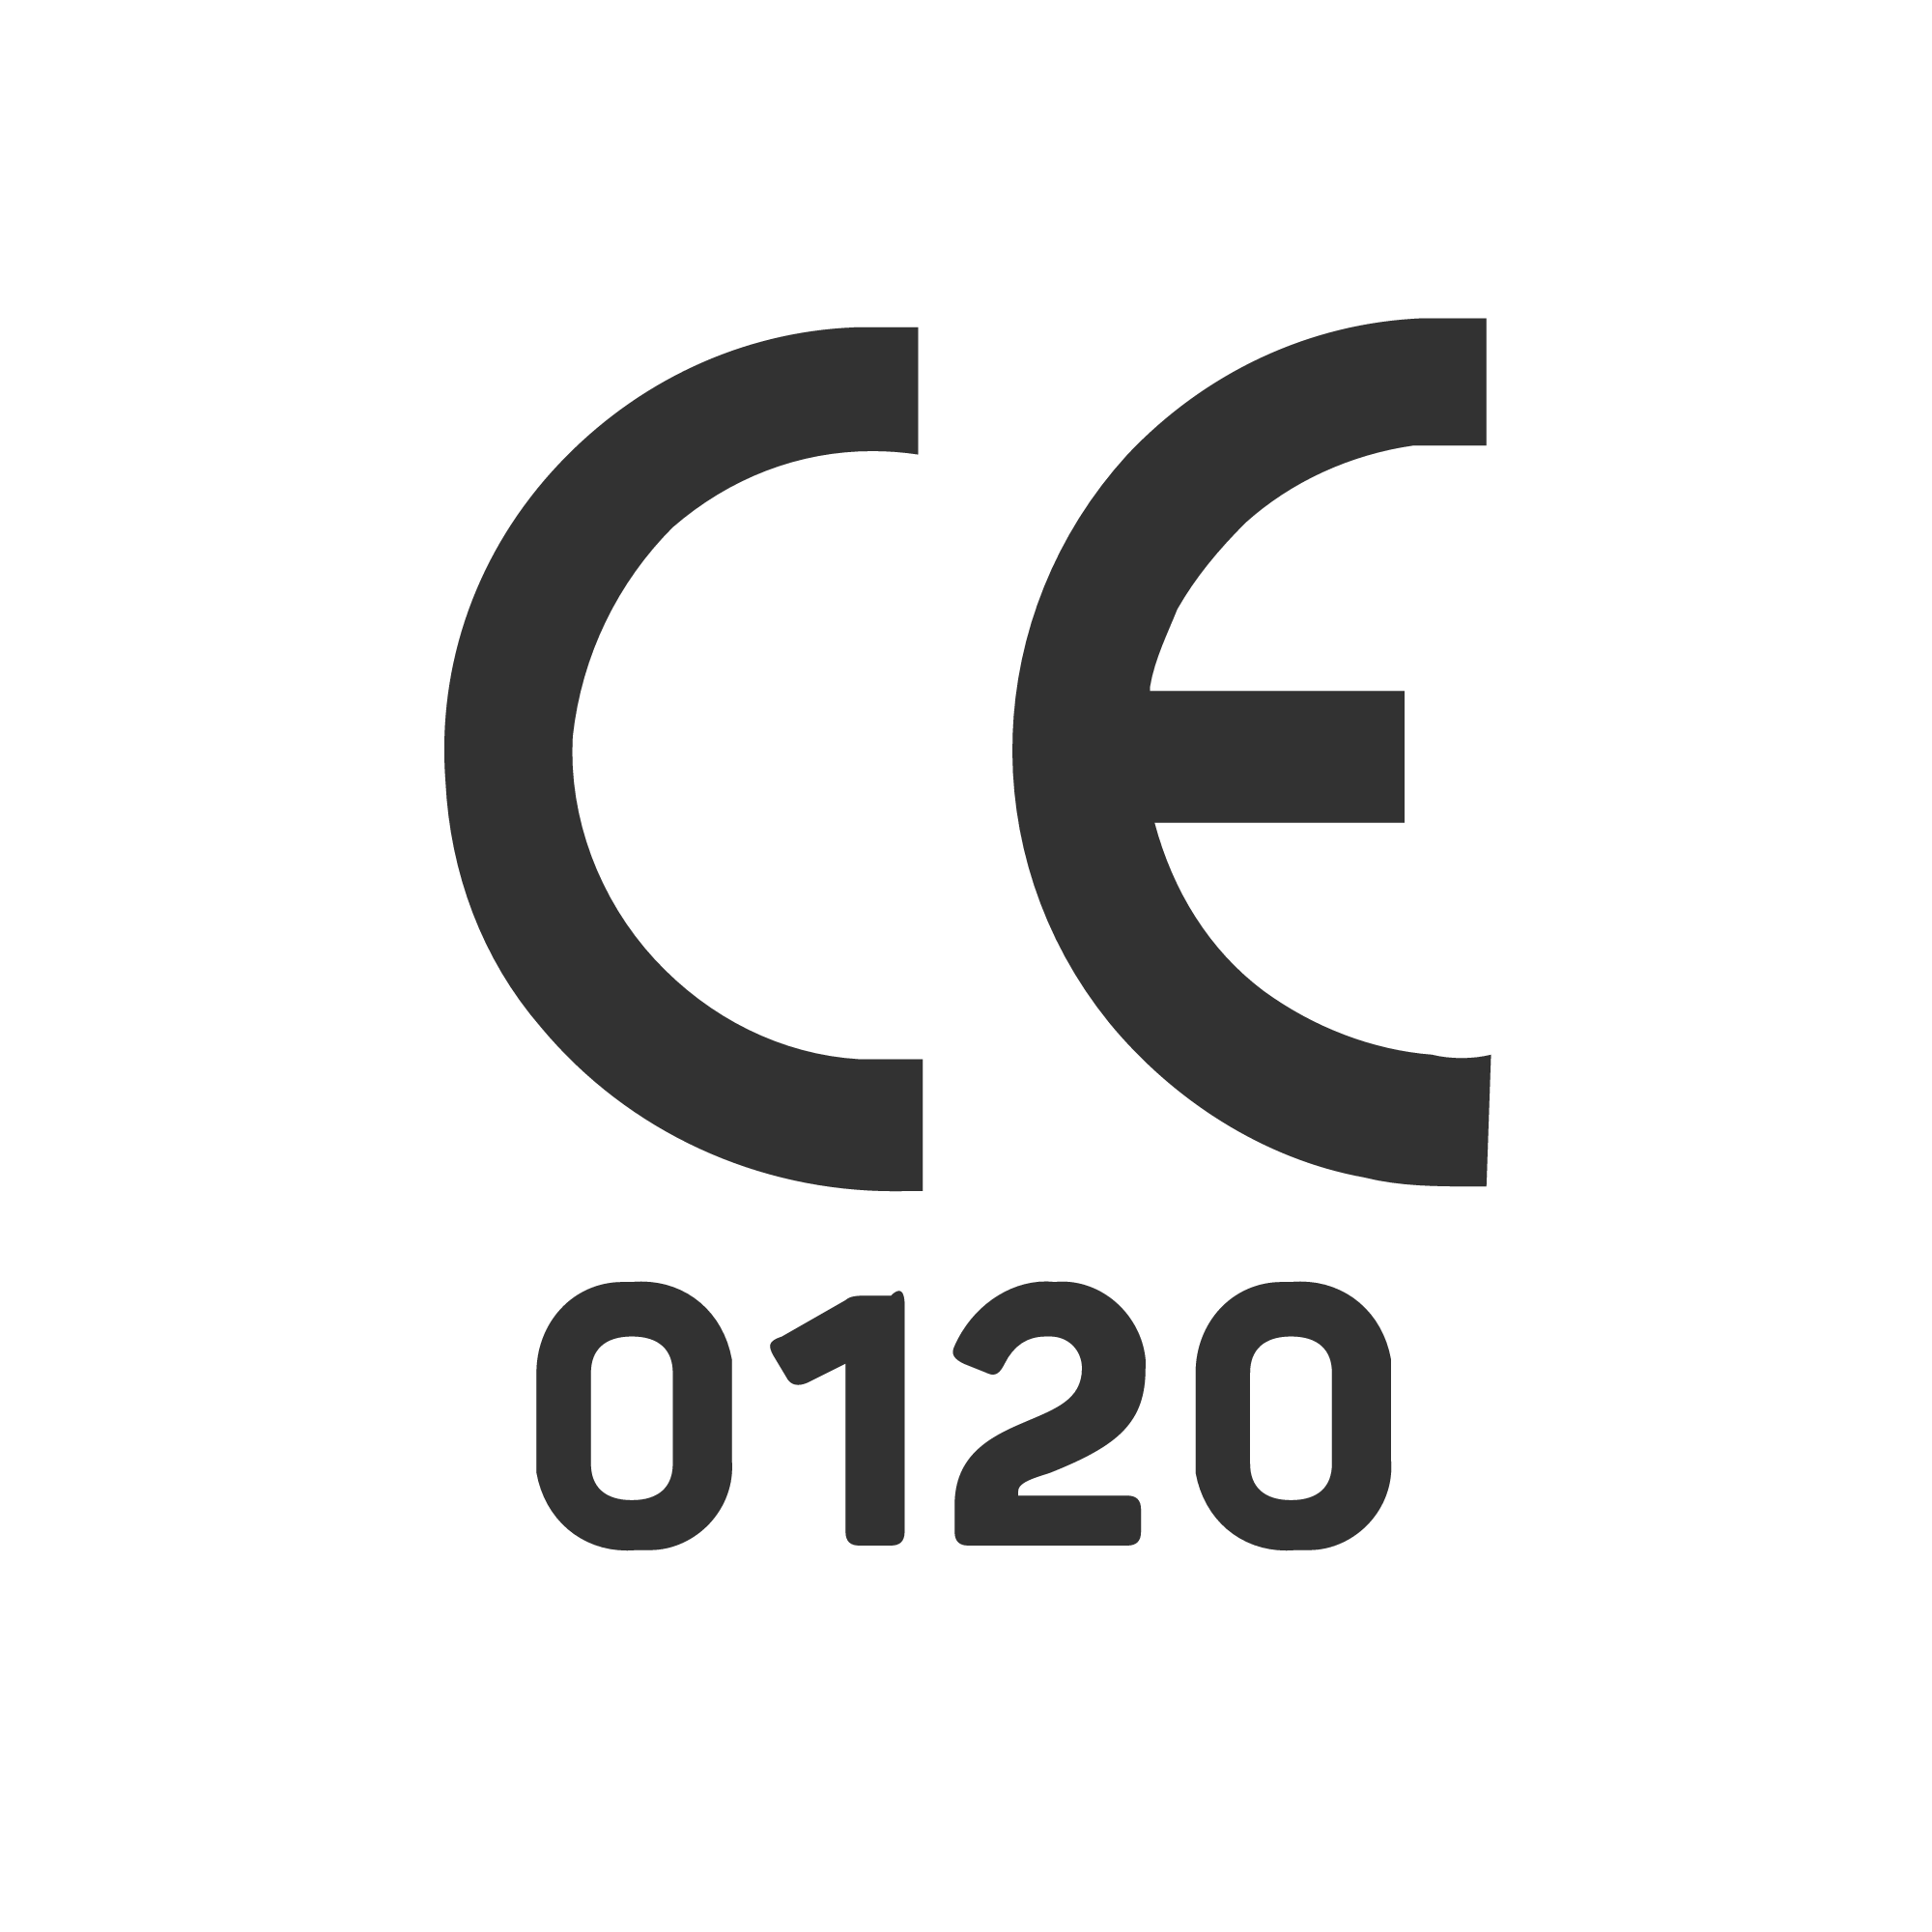 CE 0120